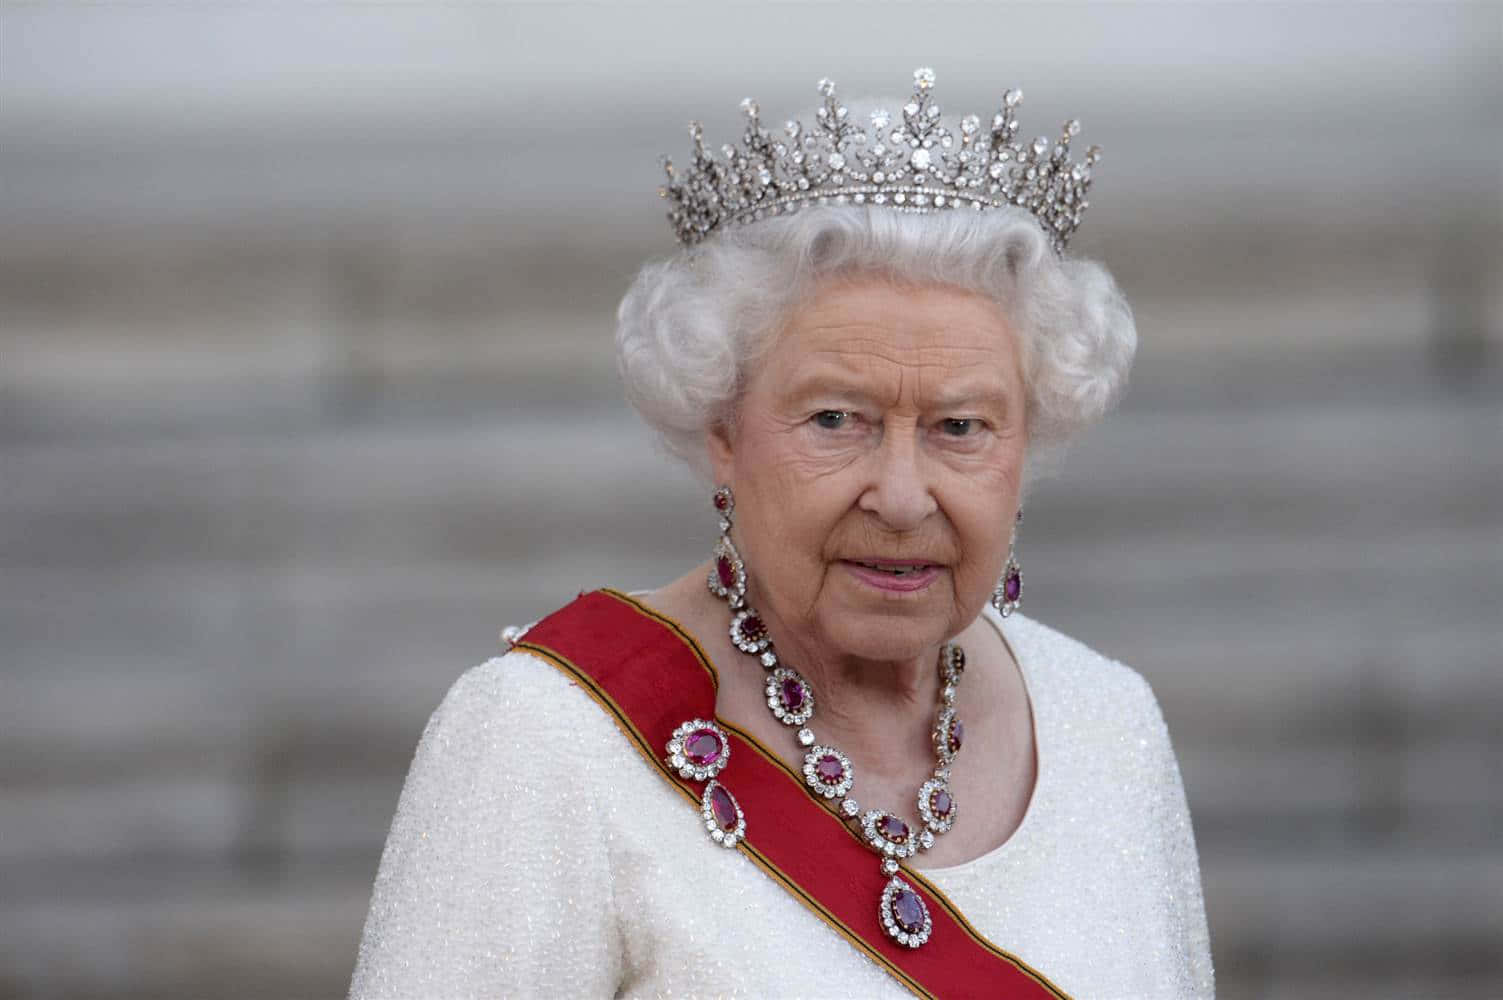 Laregina Elizabeth Ii In Abiti Vibranti Durante Un Evento Ufficiale